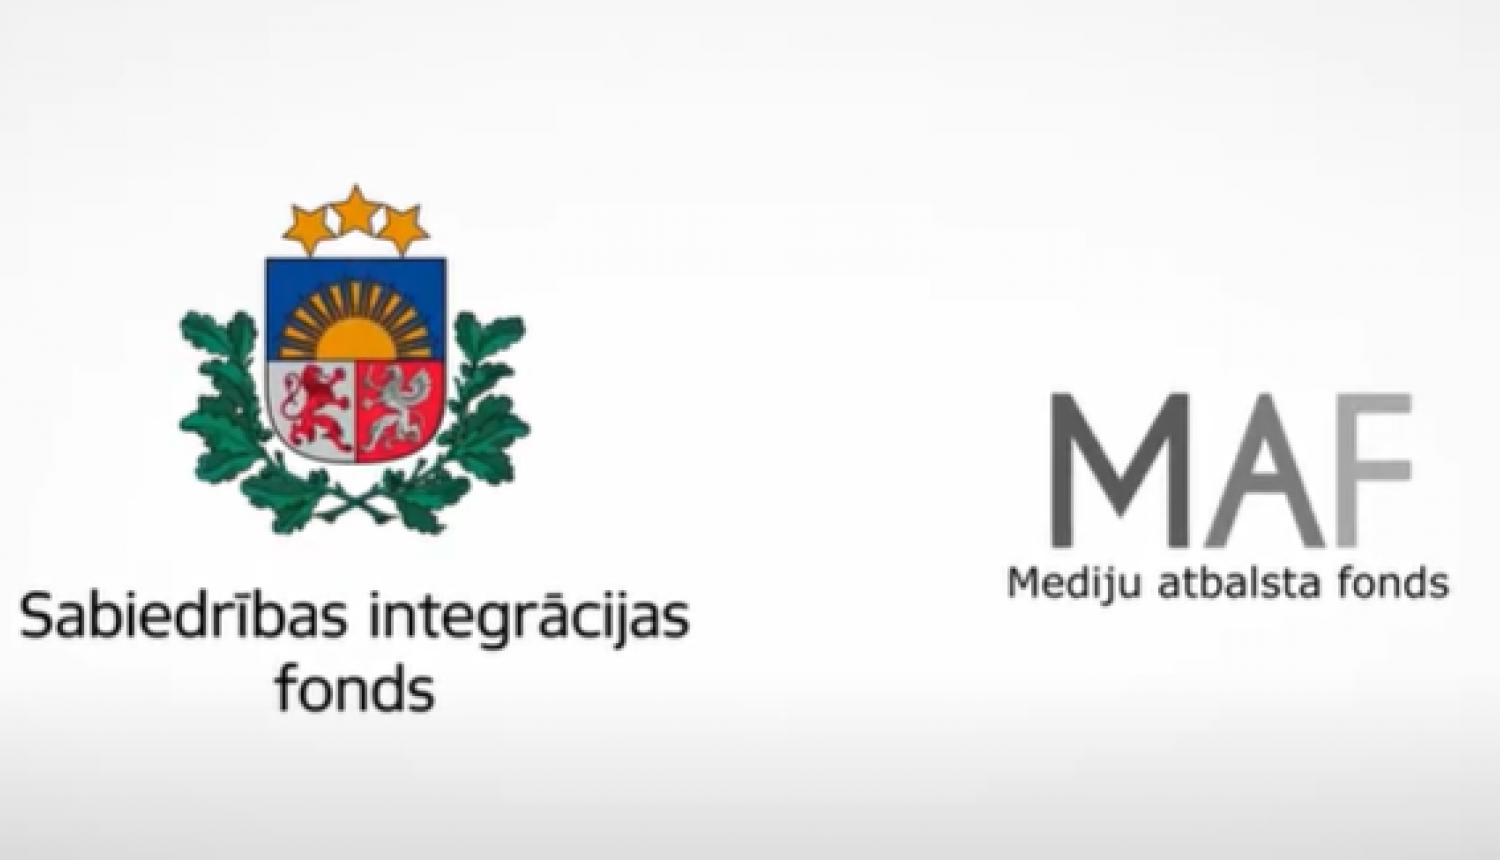 Sabiedrības integrācijas fonda un Mediju atbalsta fonda logo